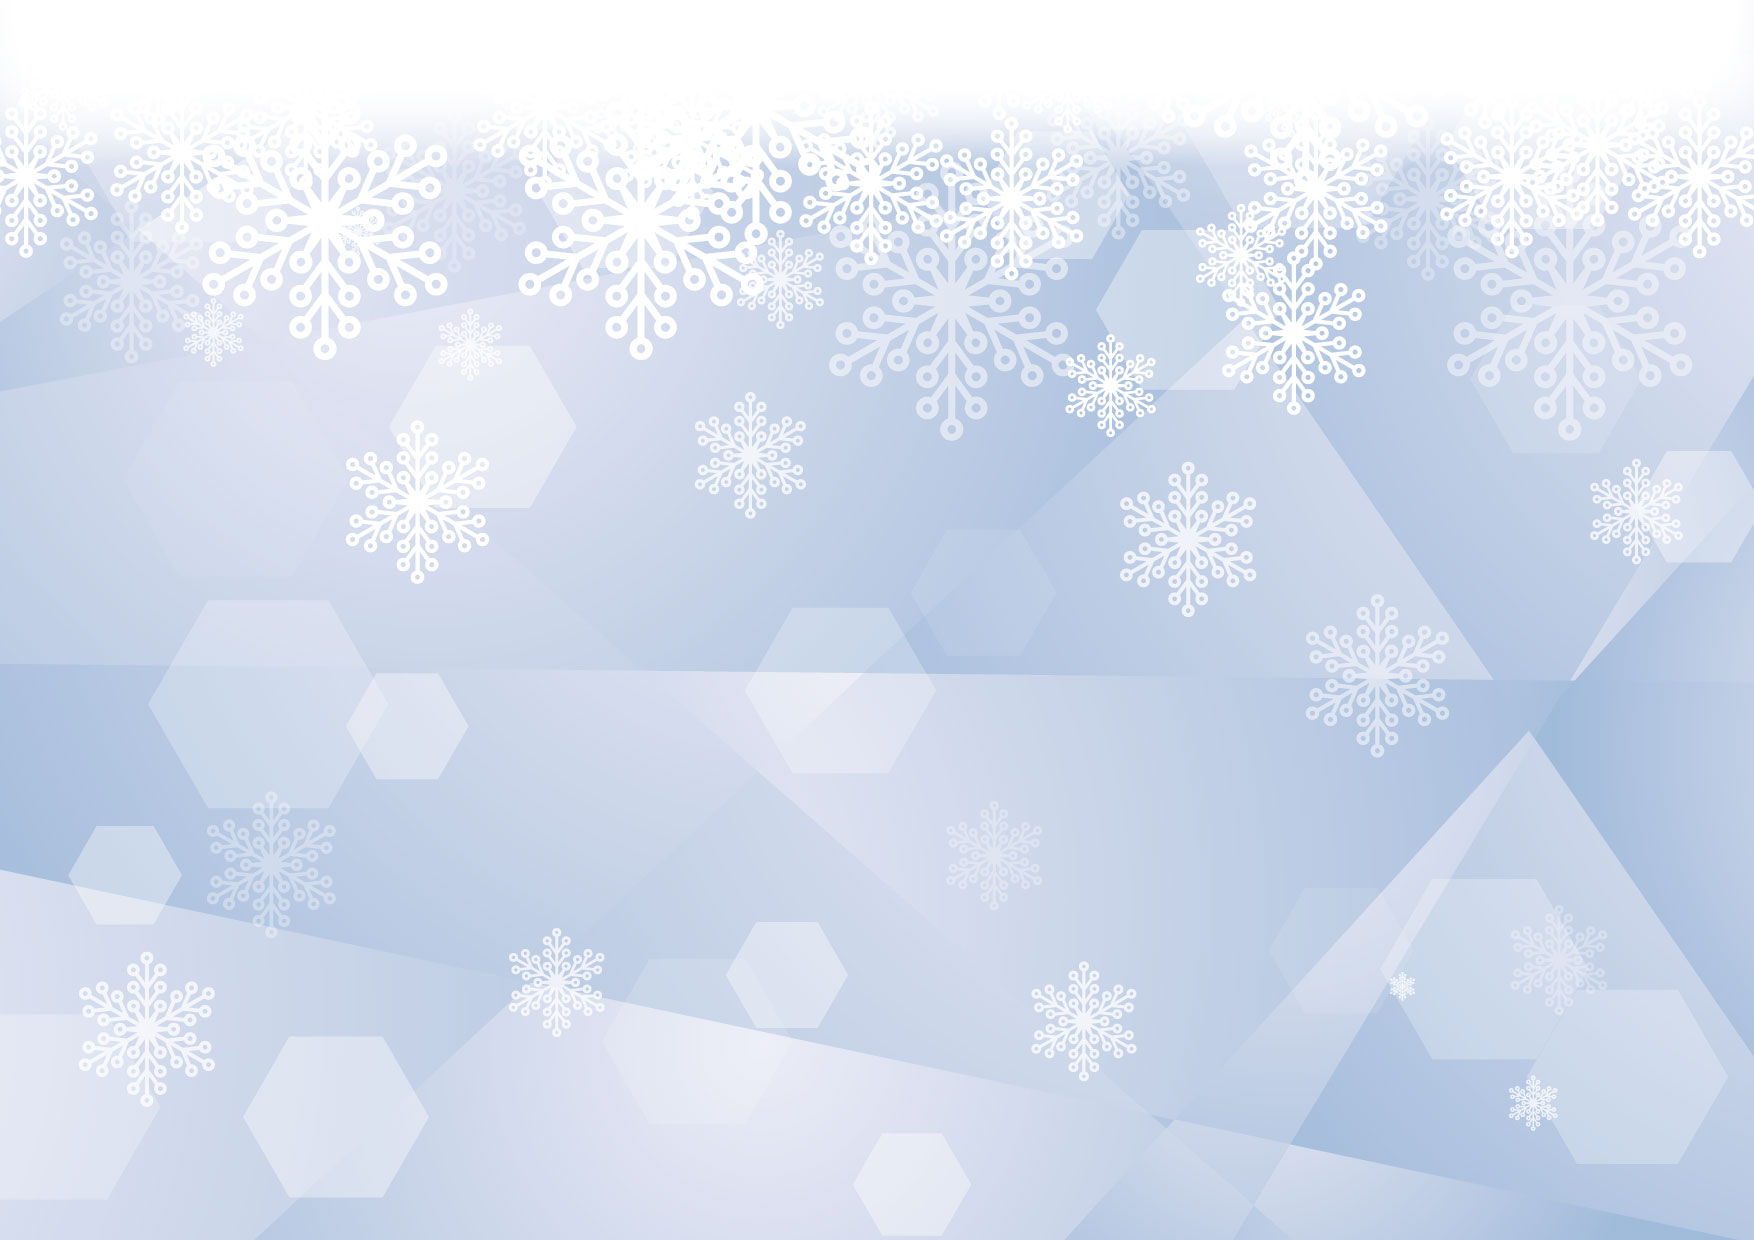 可愛いイラスト無料 雪の結晶 ガラス ブルー 背景 Free Illustration Snowflakes Glass Blue Background 公式 イラスト素材サイト イラストダウンロード